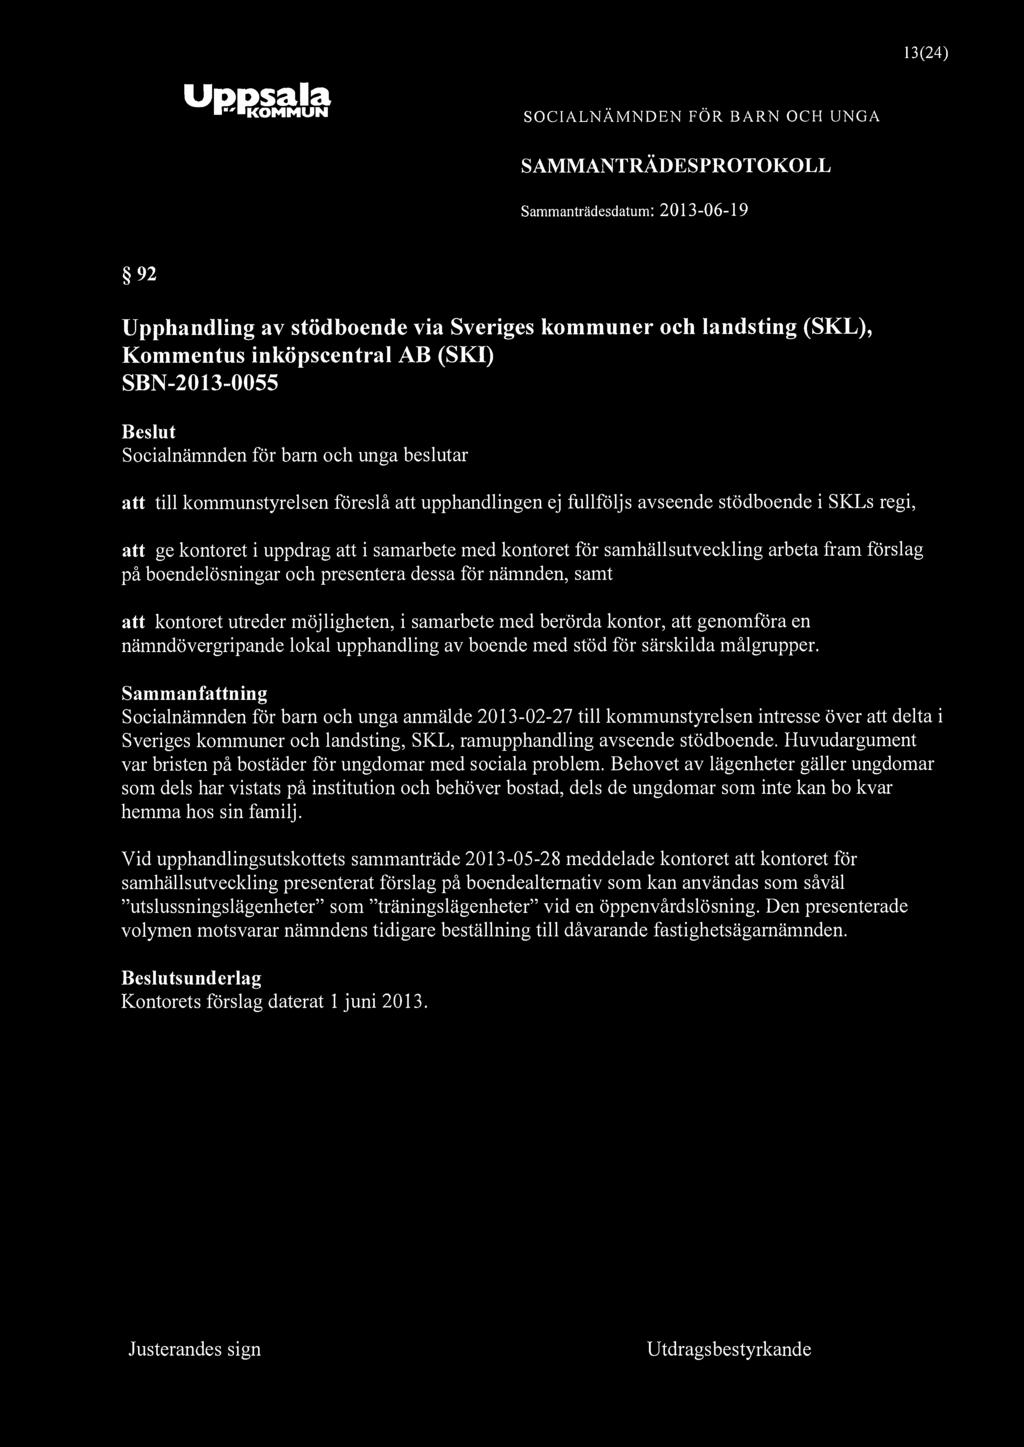 KOMMUN 13(24) 92 Upphandling av stödboende via Sveriges kommuner och landsting (SKL), Kommentus inköpscentral AB (SKI) SBN-2013-0055 att till kommunstyrelsen föreslå att upphandlingen ej fullföljs